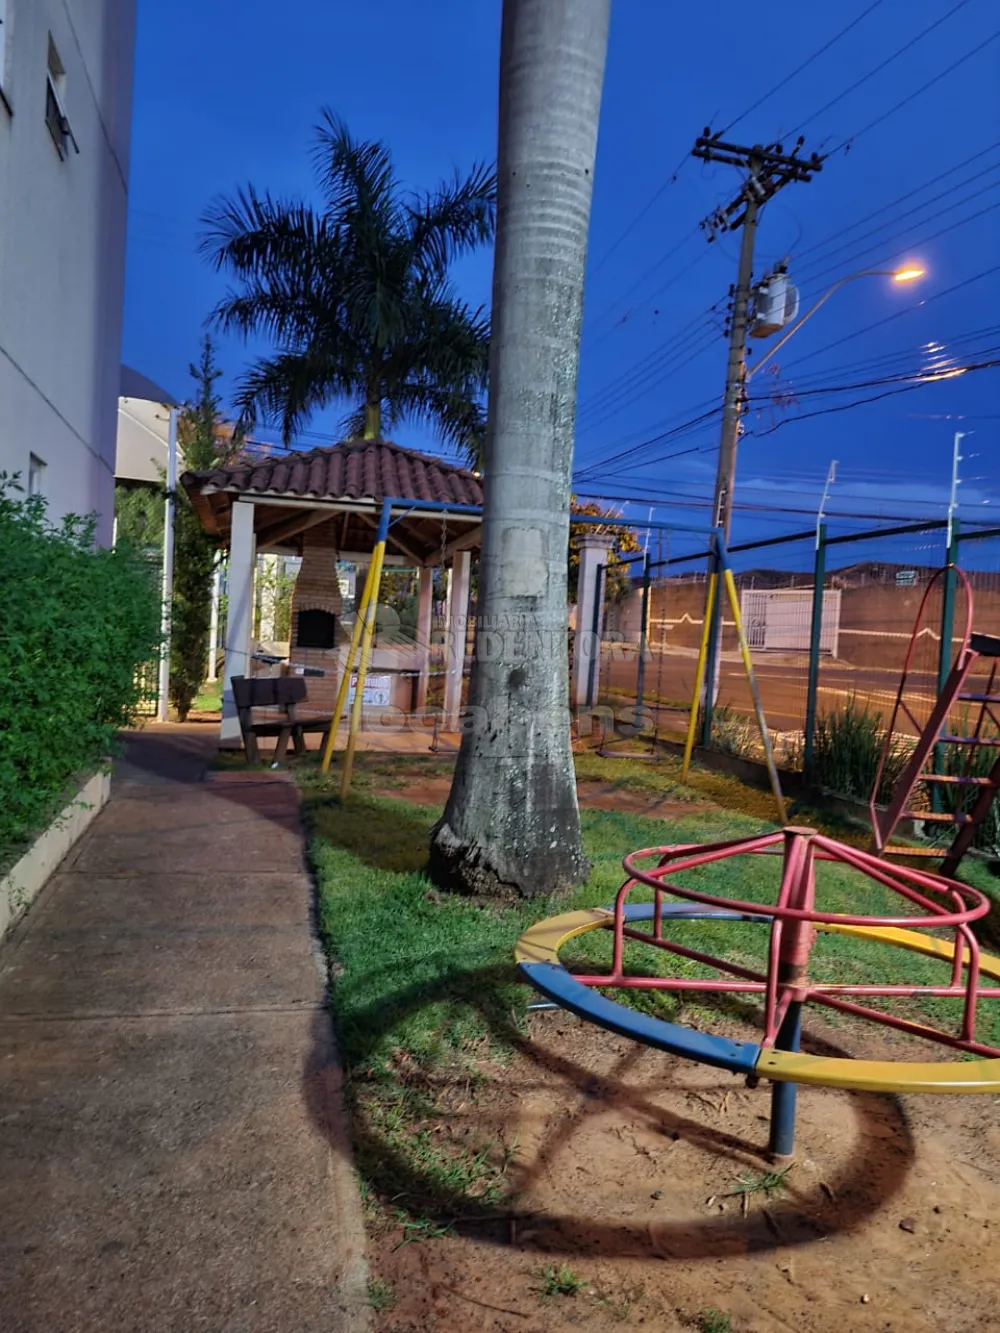 Comprar Apartamento / Padrão em São José do Rio Preto apenas R$ 160.000,00 - Foto 19